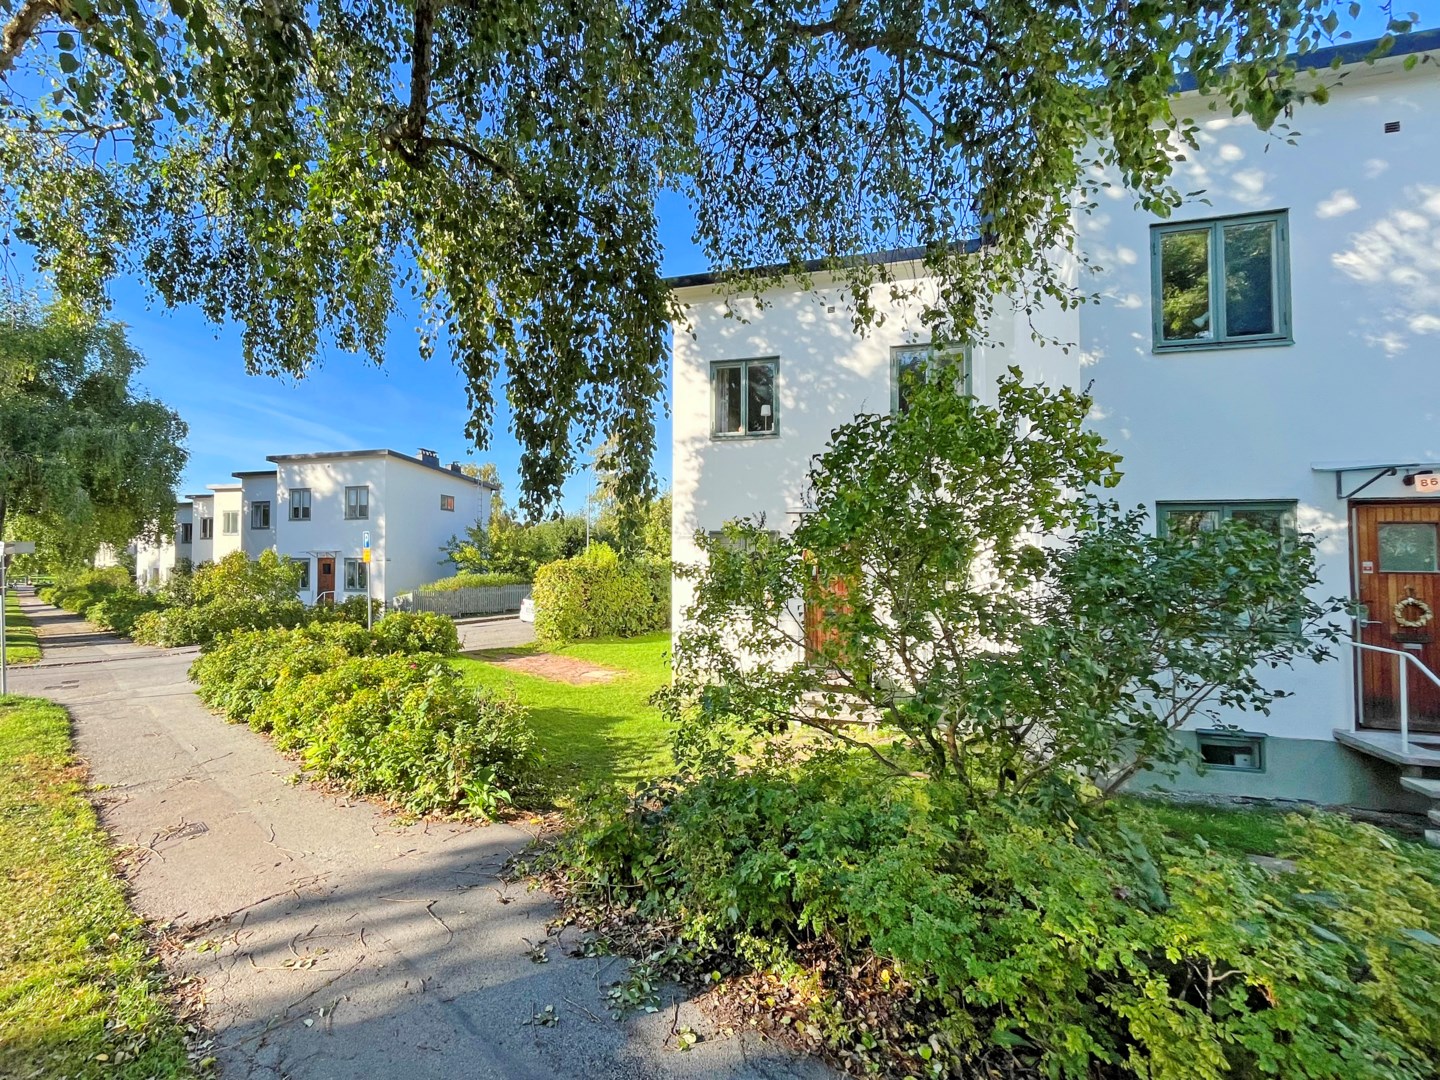 Bostadsbild från Ålstensgatan 88, Såld i Bromma - Ålsten, Stockholm